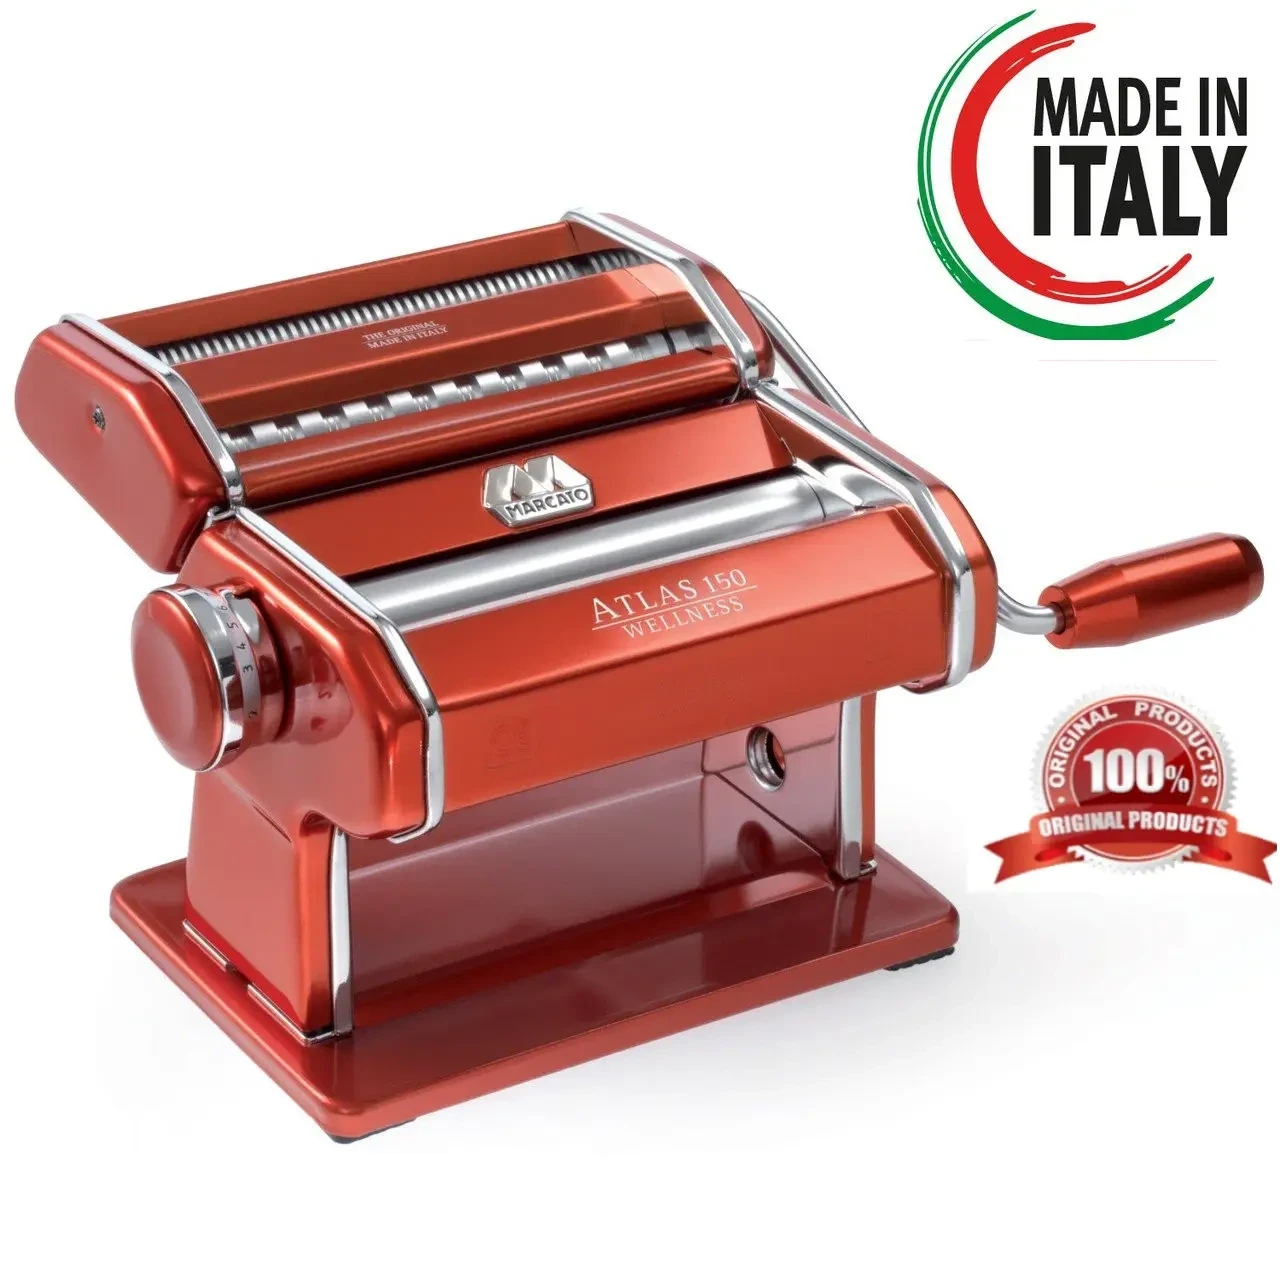 Локшинорізка Marcato Atlas 150 Rosso паста-машина для нарізки локшини і тіста — Оригінал!